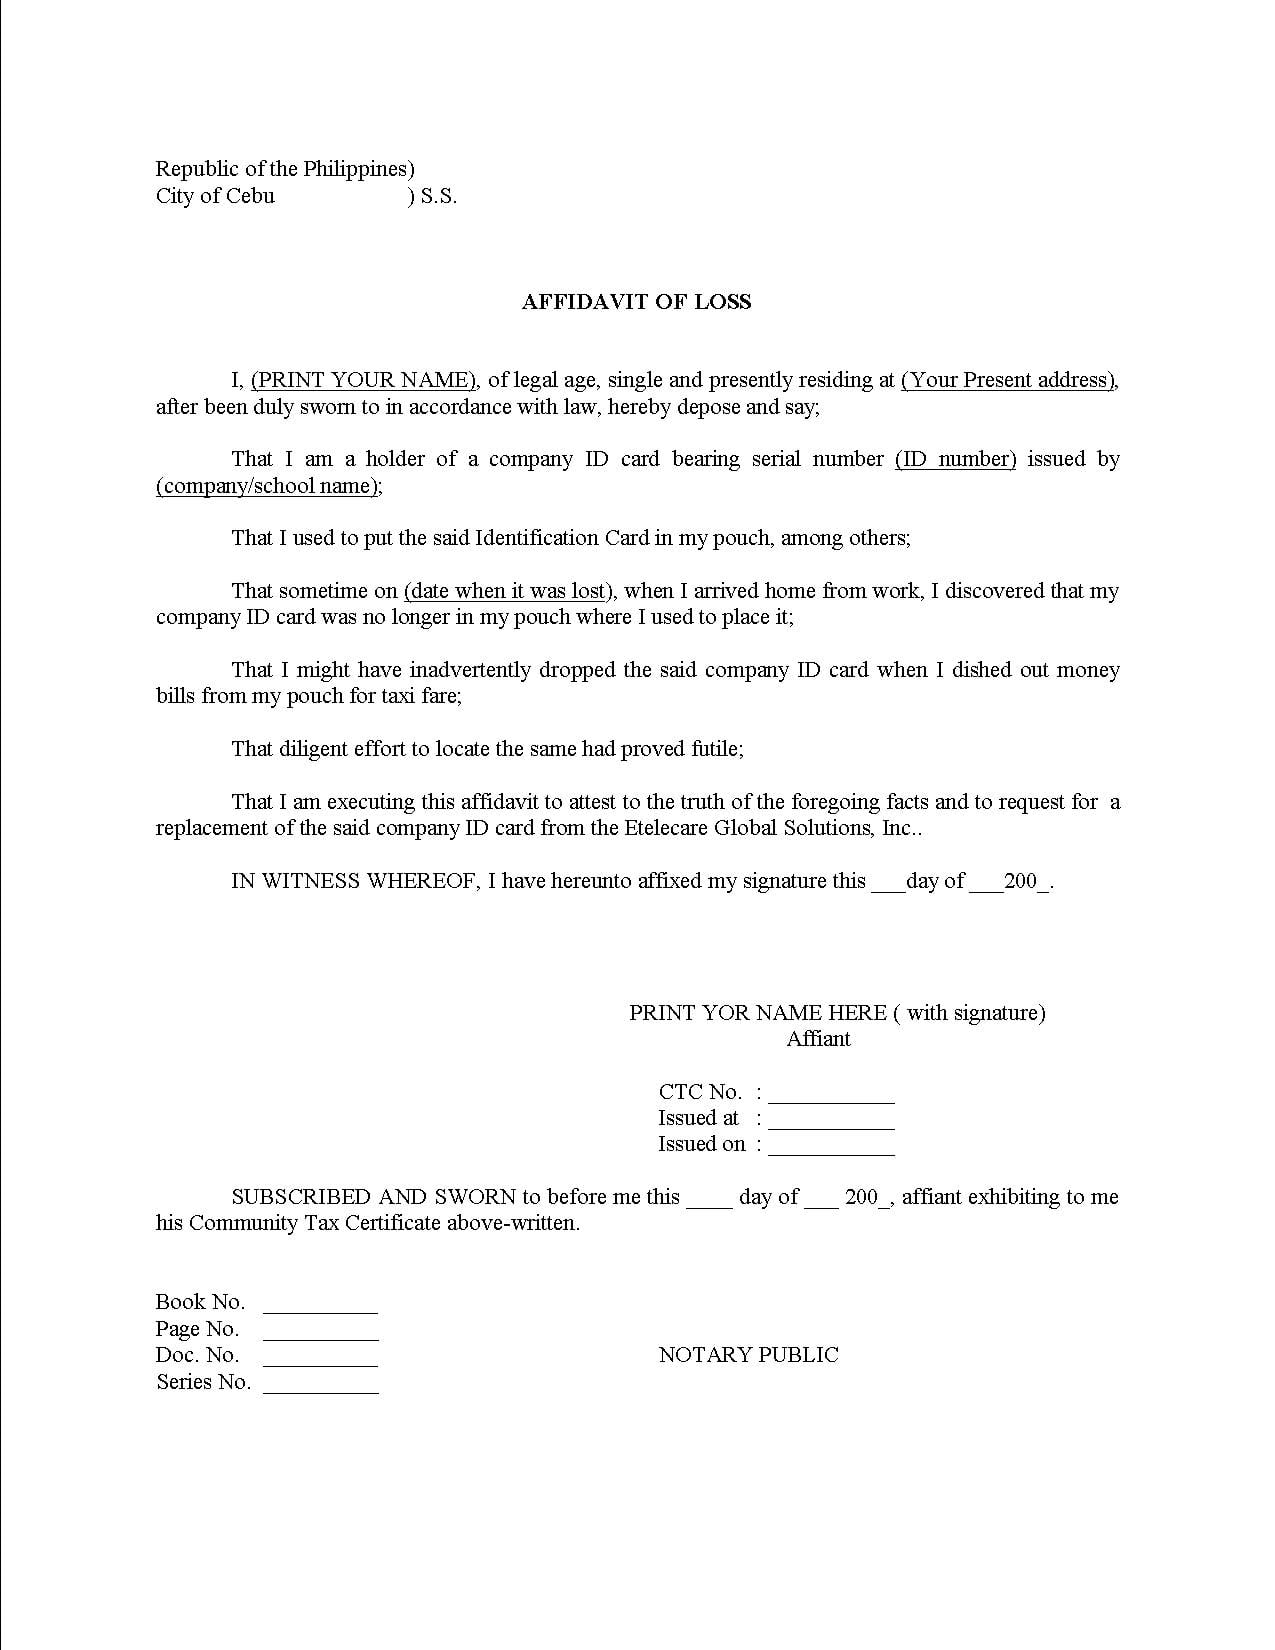 affidavit-letter-template